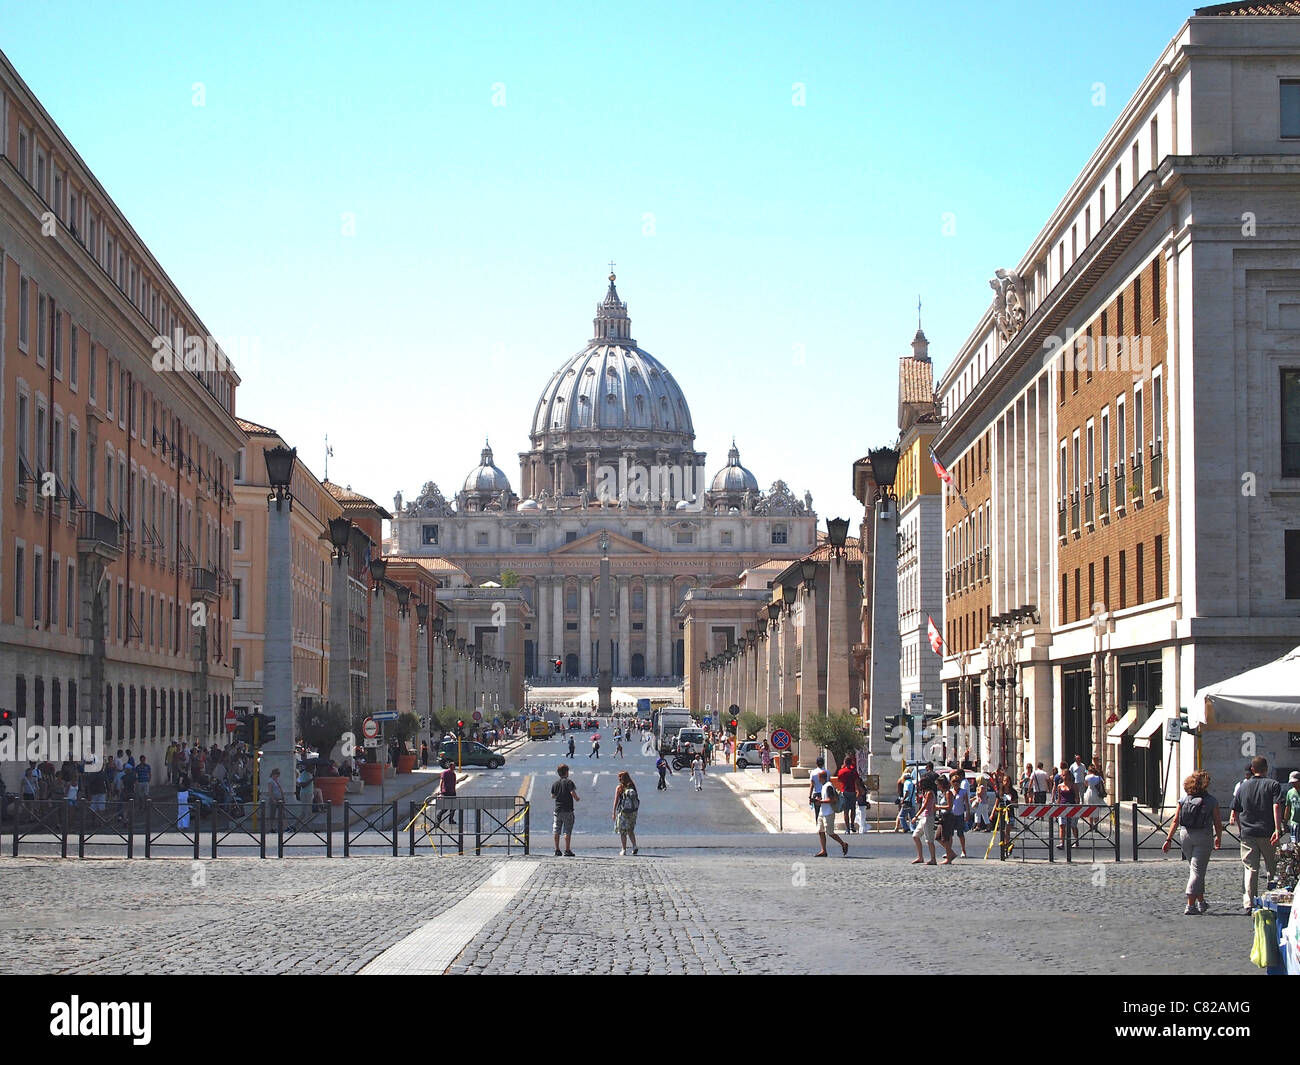 Vatican, Rome - St Peter Basilica viewed from Via della Conciliazione, Rome, Italy, Europe Stock Photo